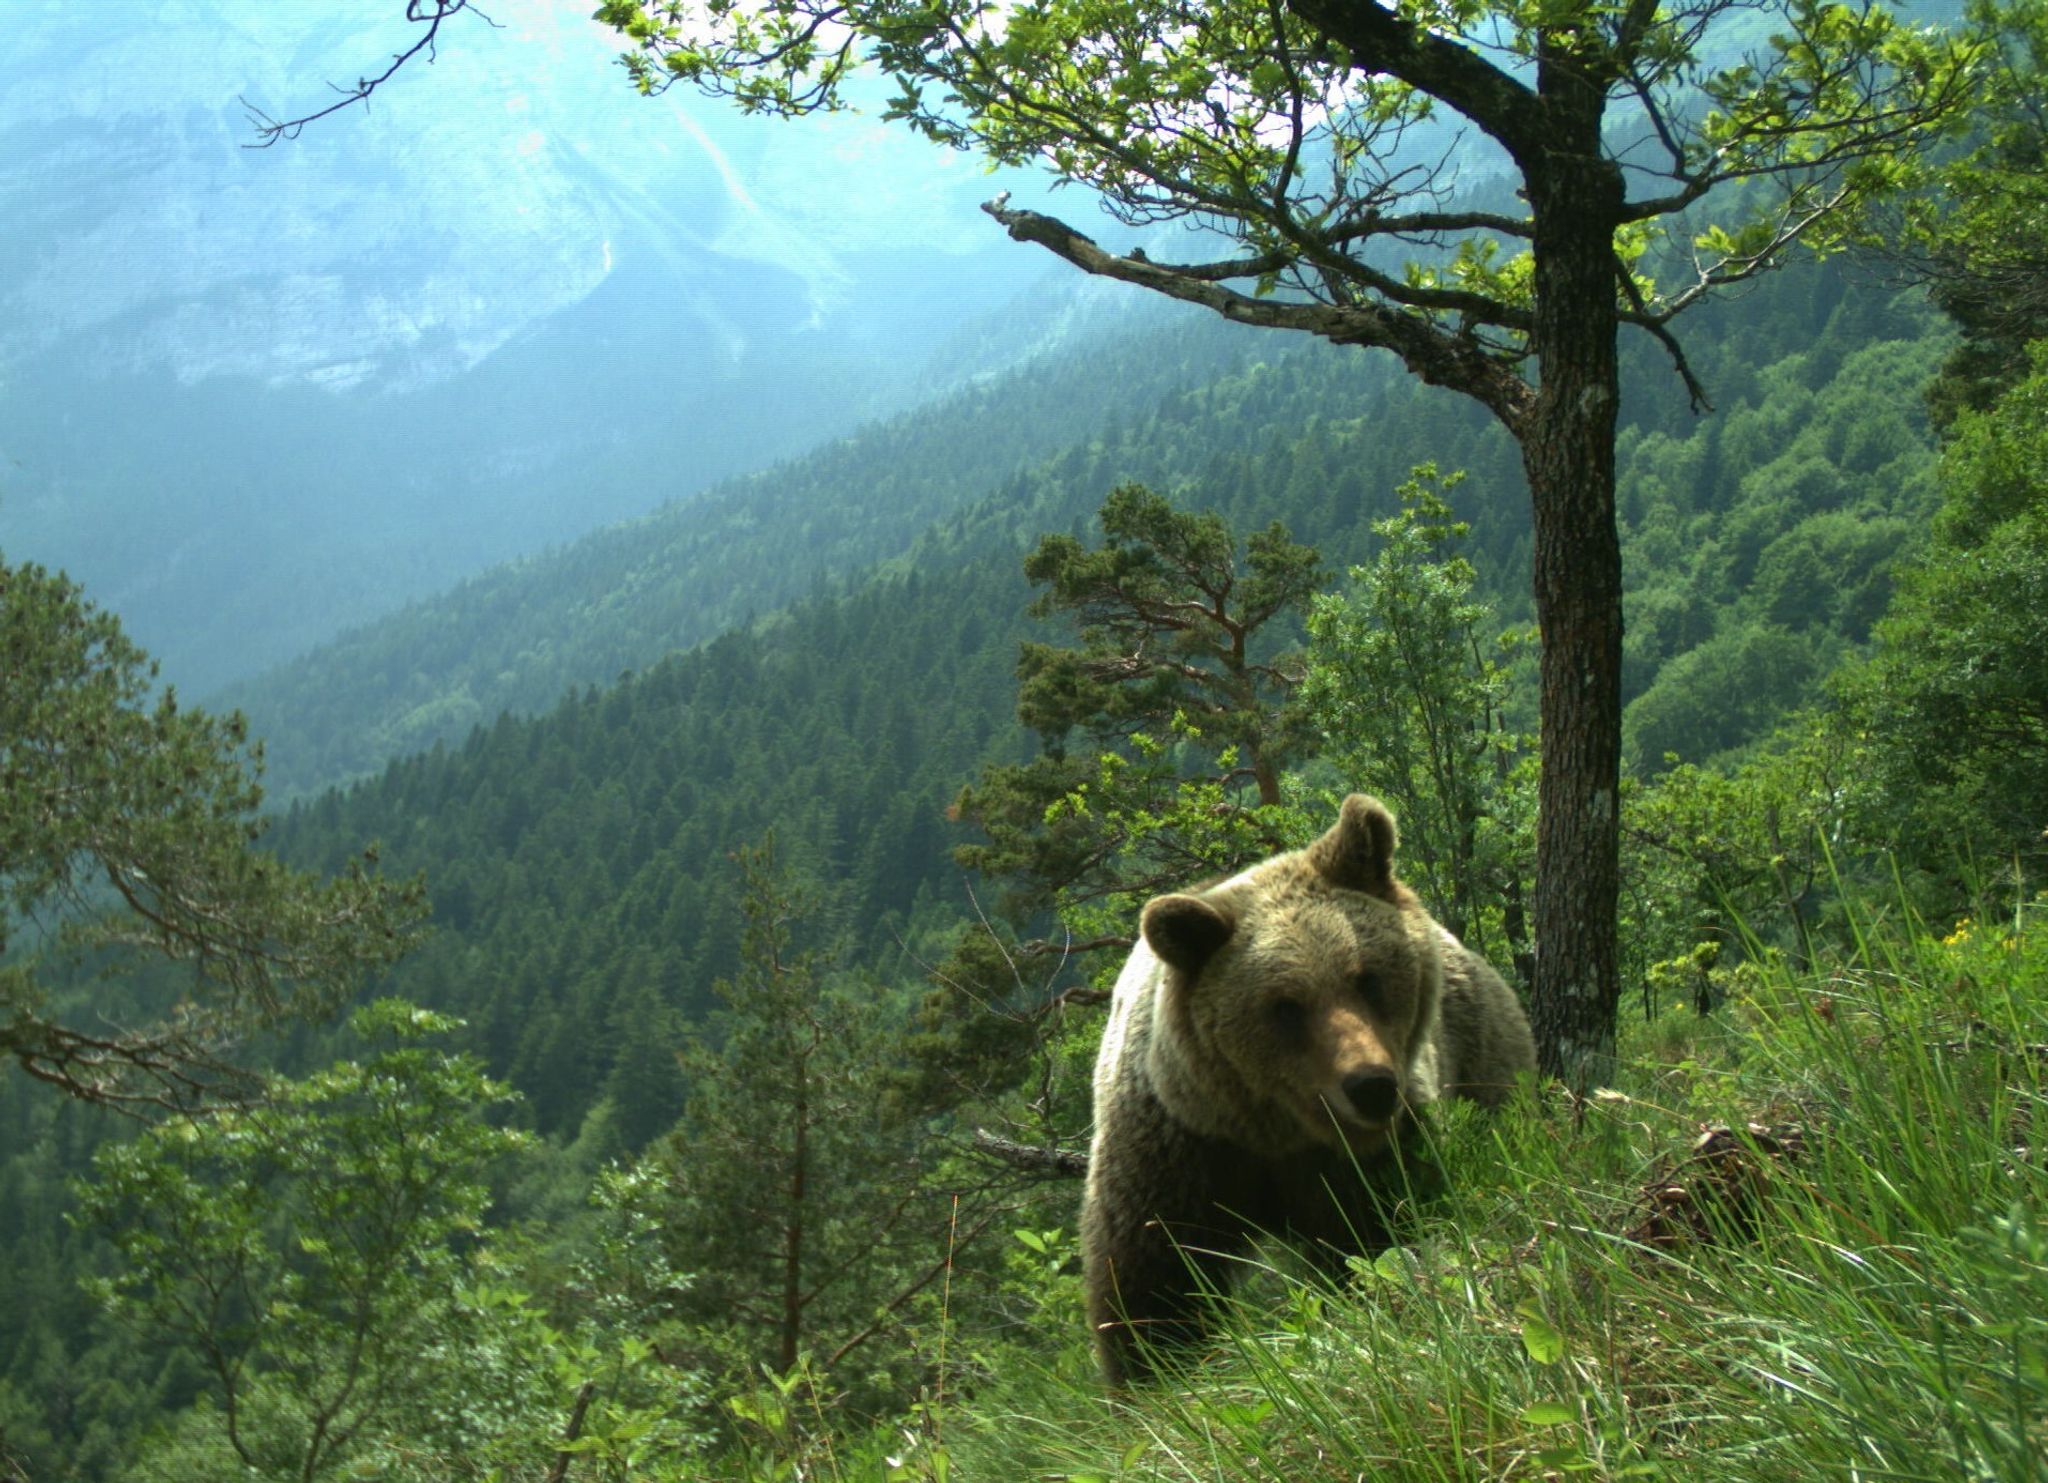 Abschießen? Kein Ende im Streit um Bären im Trentino